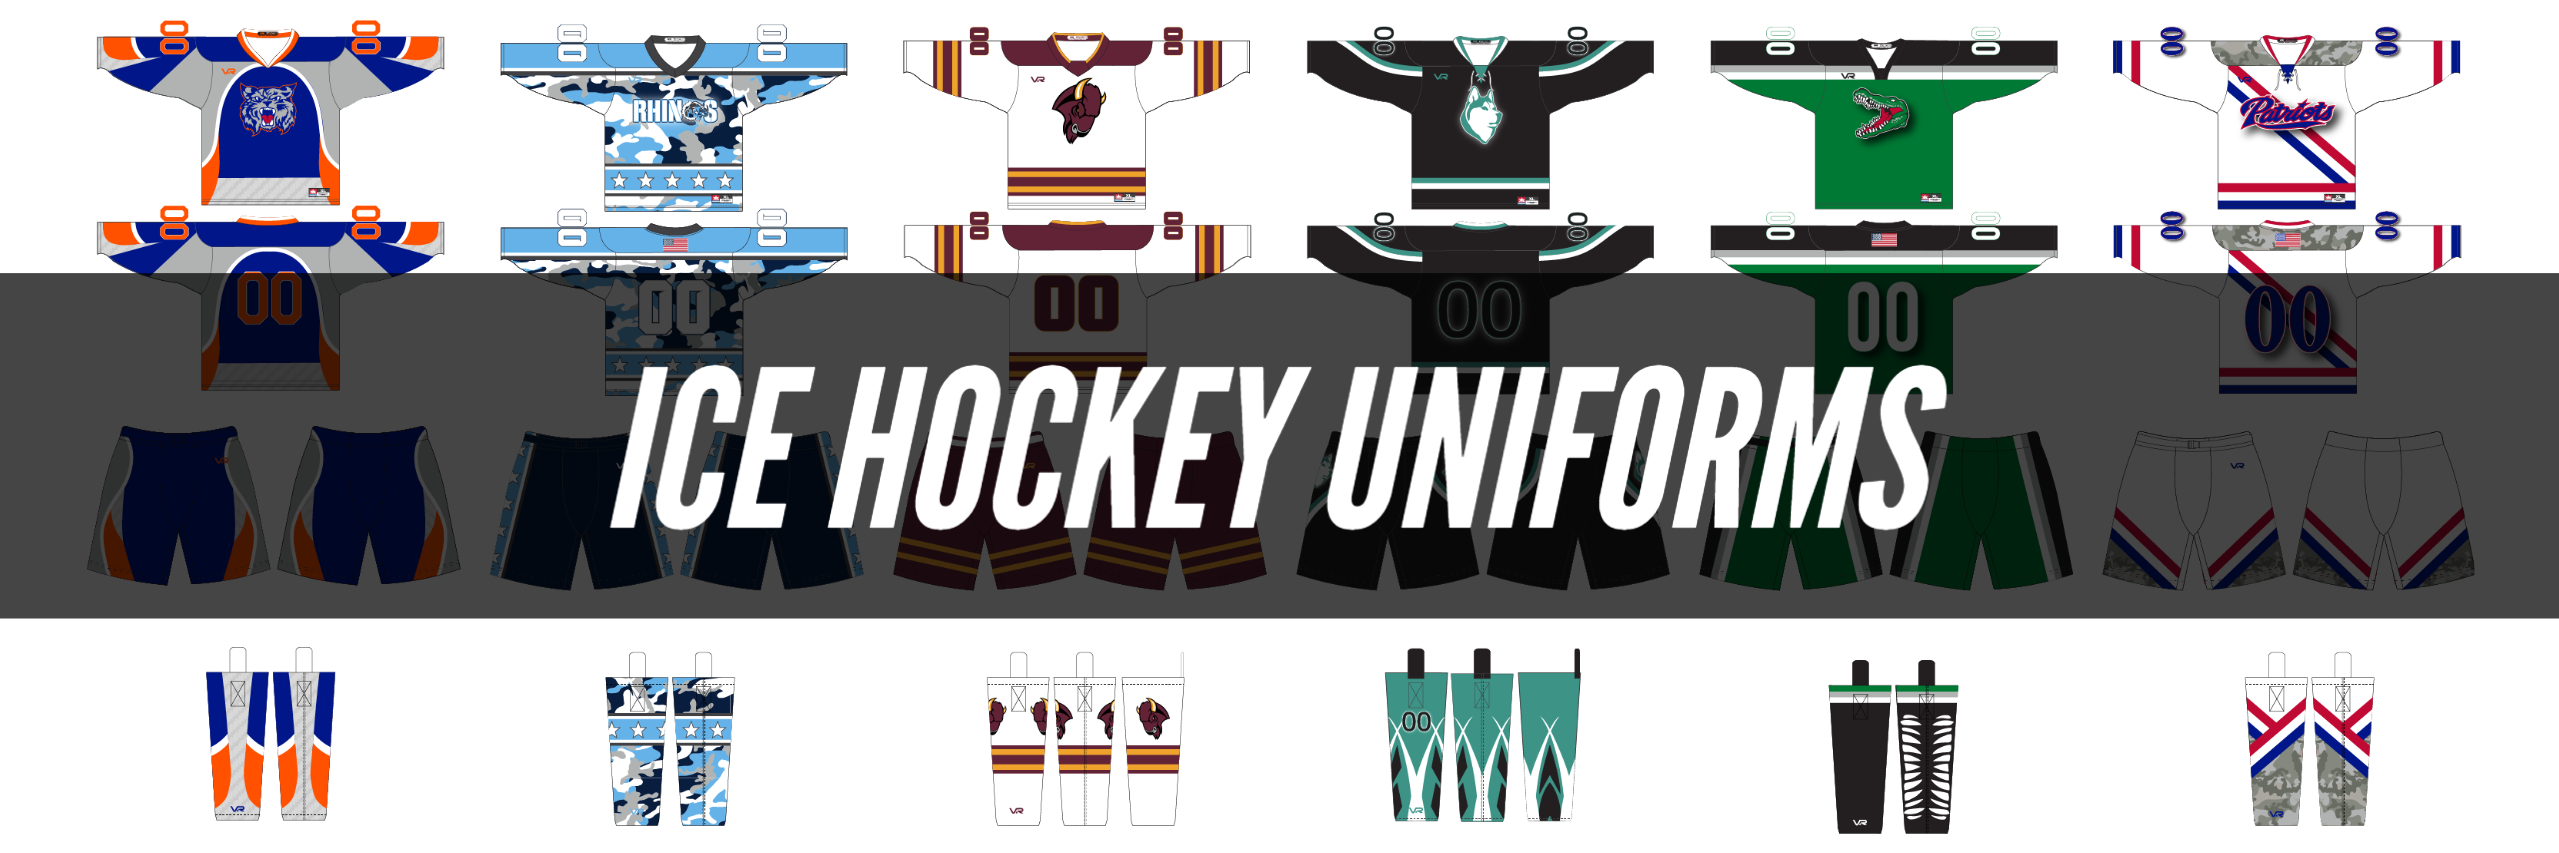 Showcasing Custom Sublimated Ice Hockey Uniforms